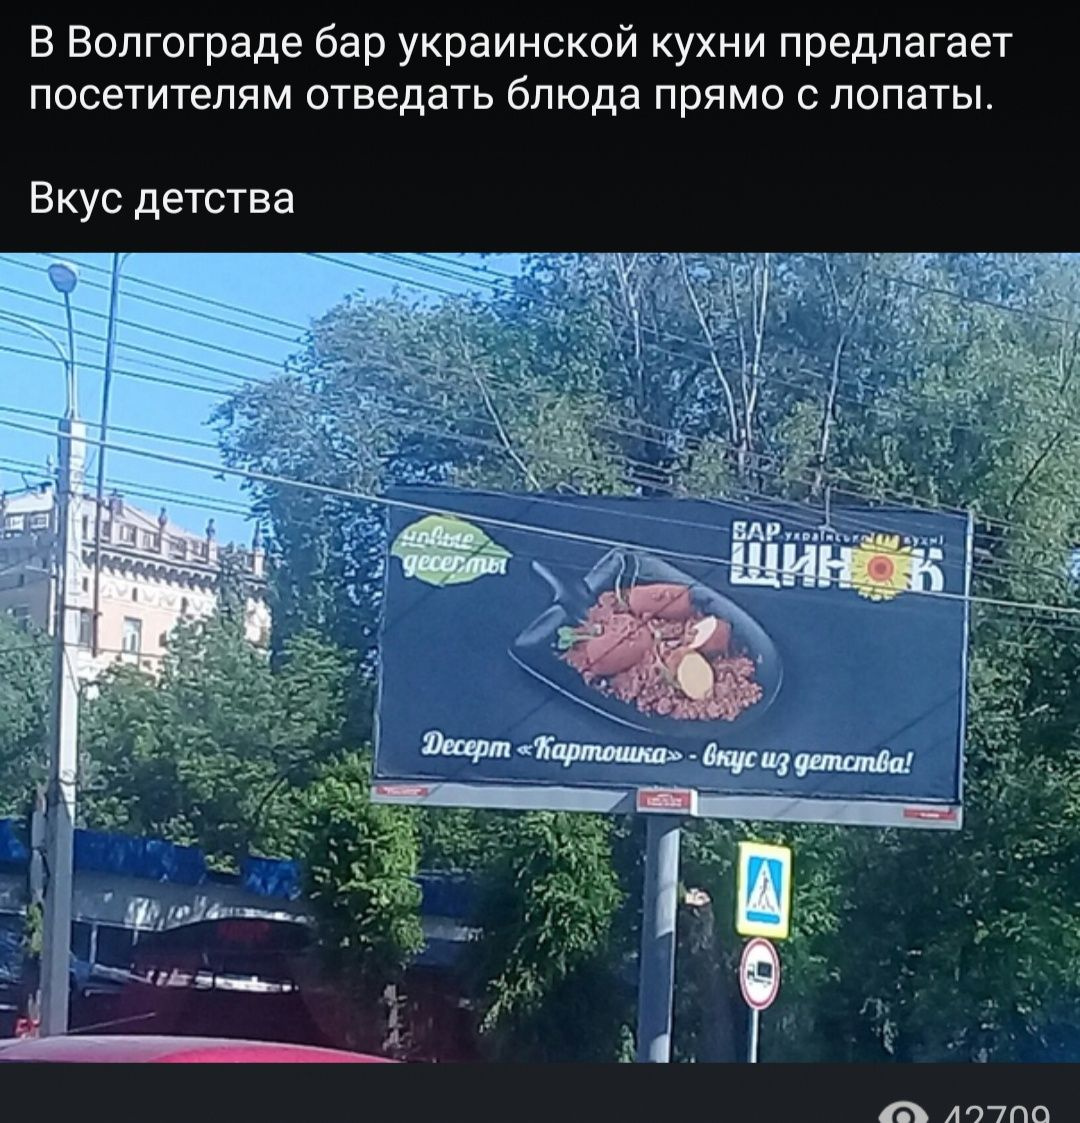 Украинские СМИ и соцсети активно обсуждают волгоградскую рекламу